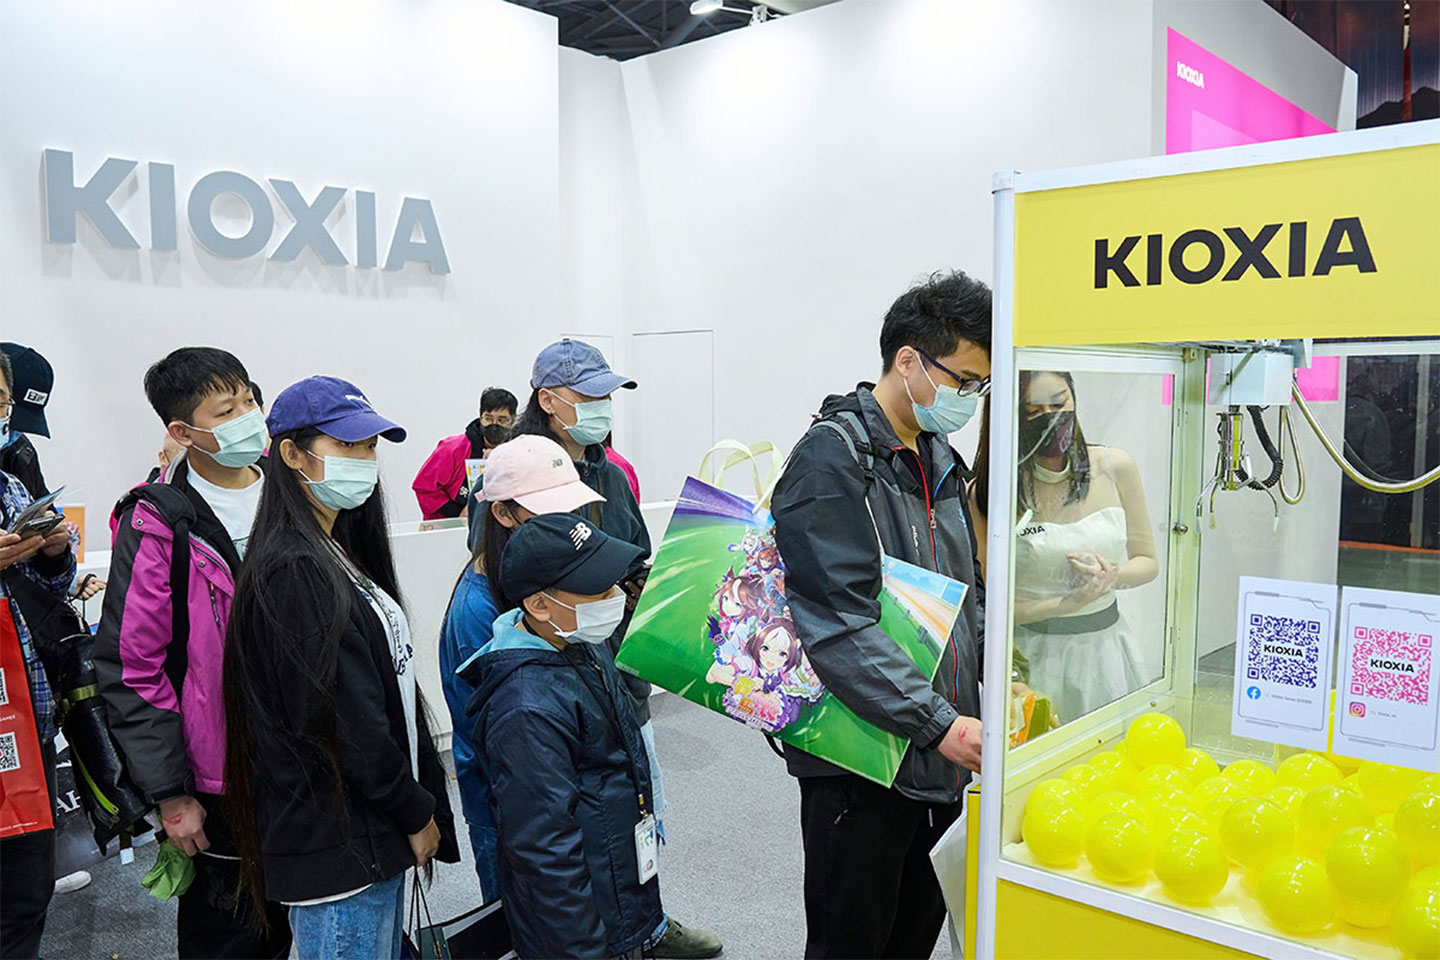 鎧俠 KIOXIA 的夾娃娃機台也吸引了大批玩家排隊試手氣。